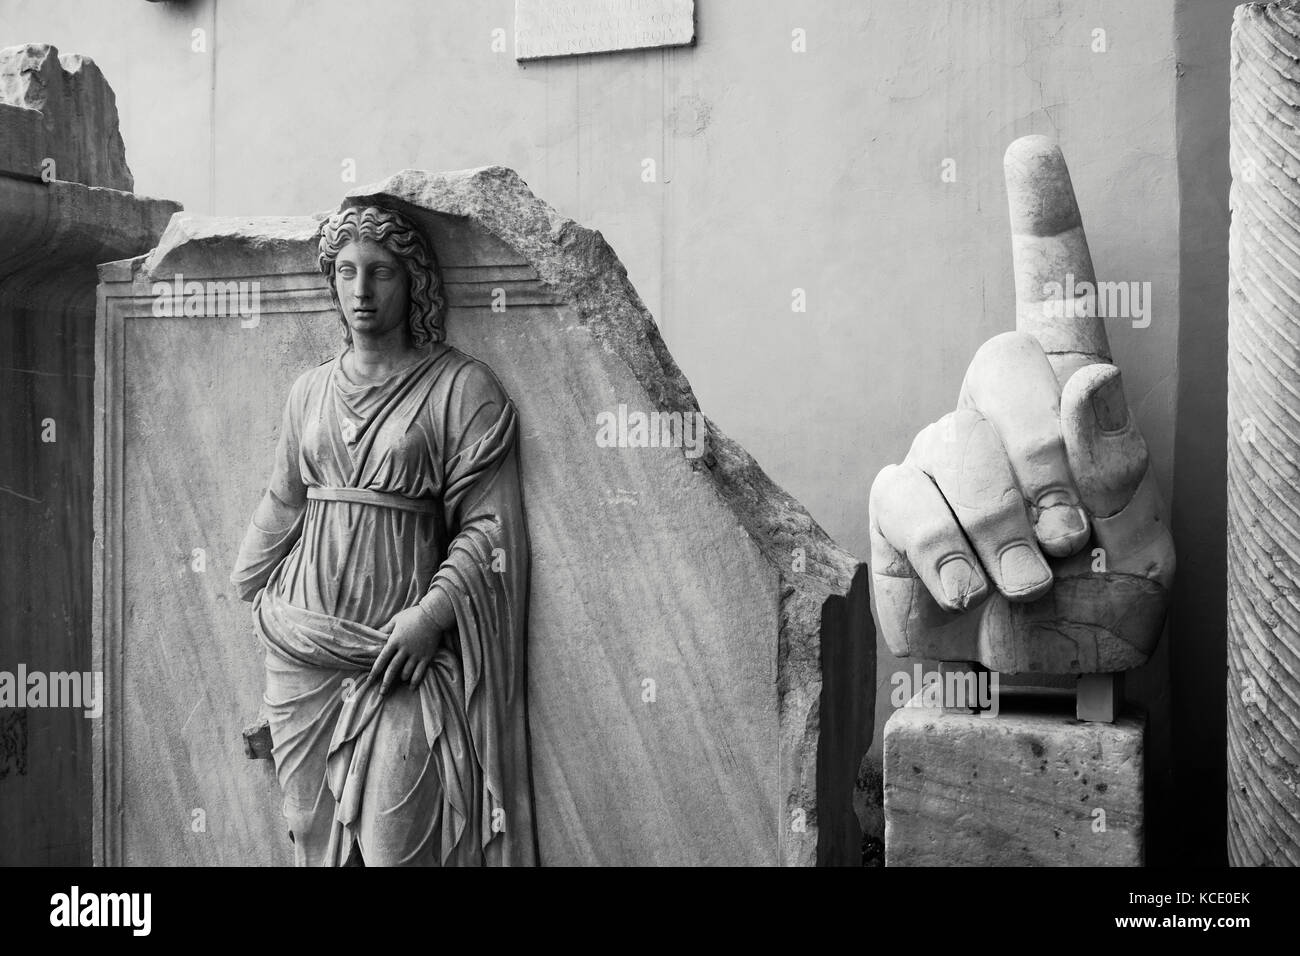 Roma. L'Italia. Frammenti scultorei nel cortile del Palazzo dei Conservatori, Musei Capitolini. Rappresentazione di una delle province romane (sinistra Foto Stock